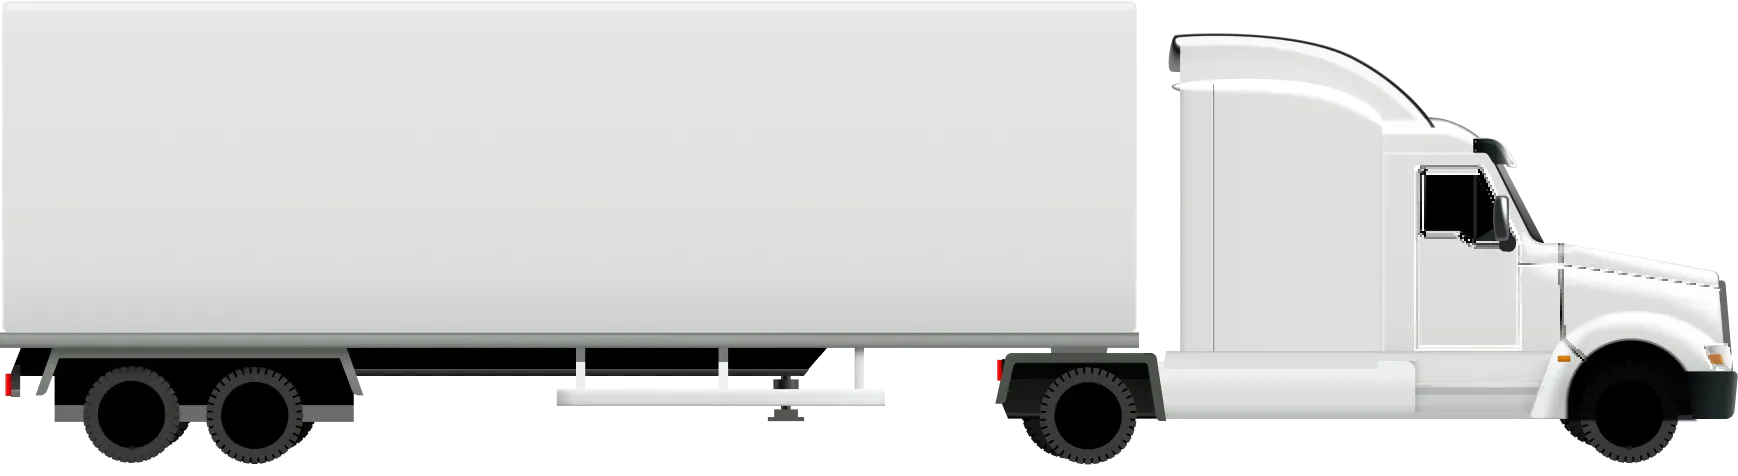 main-truck